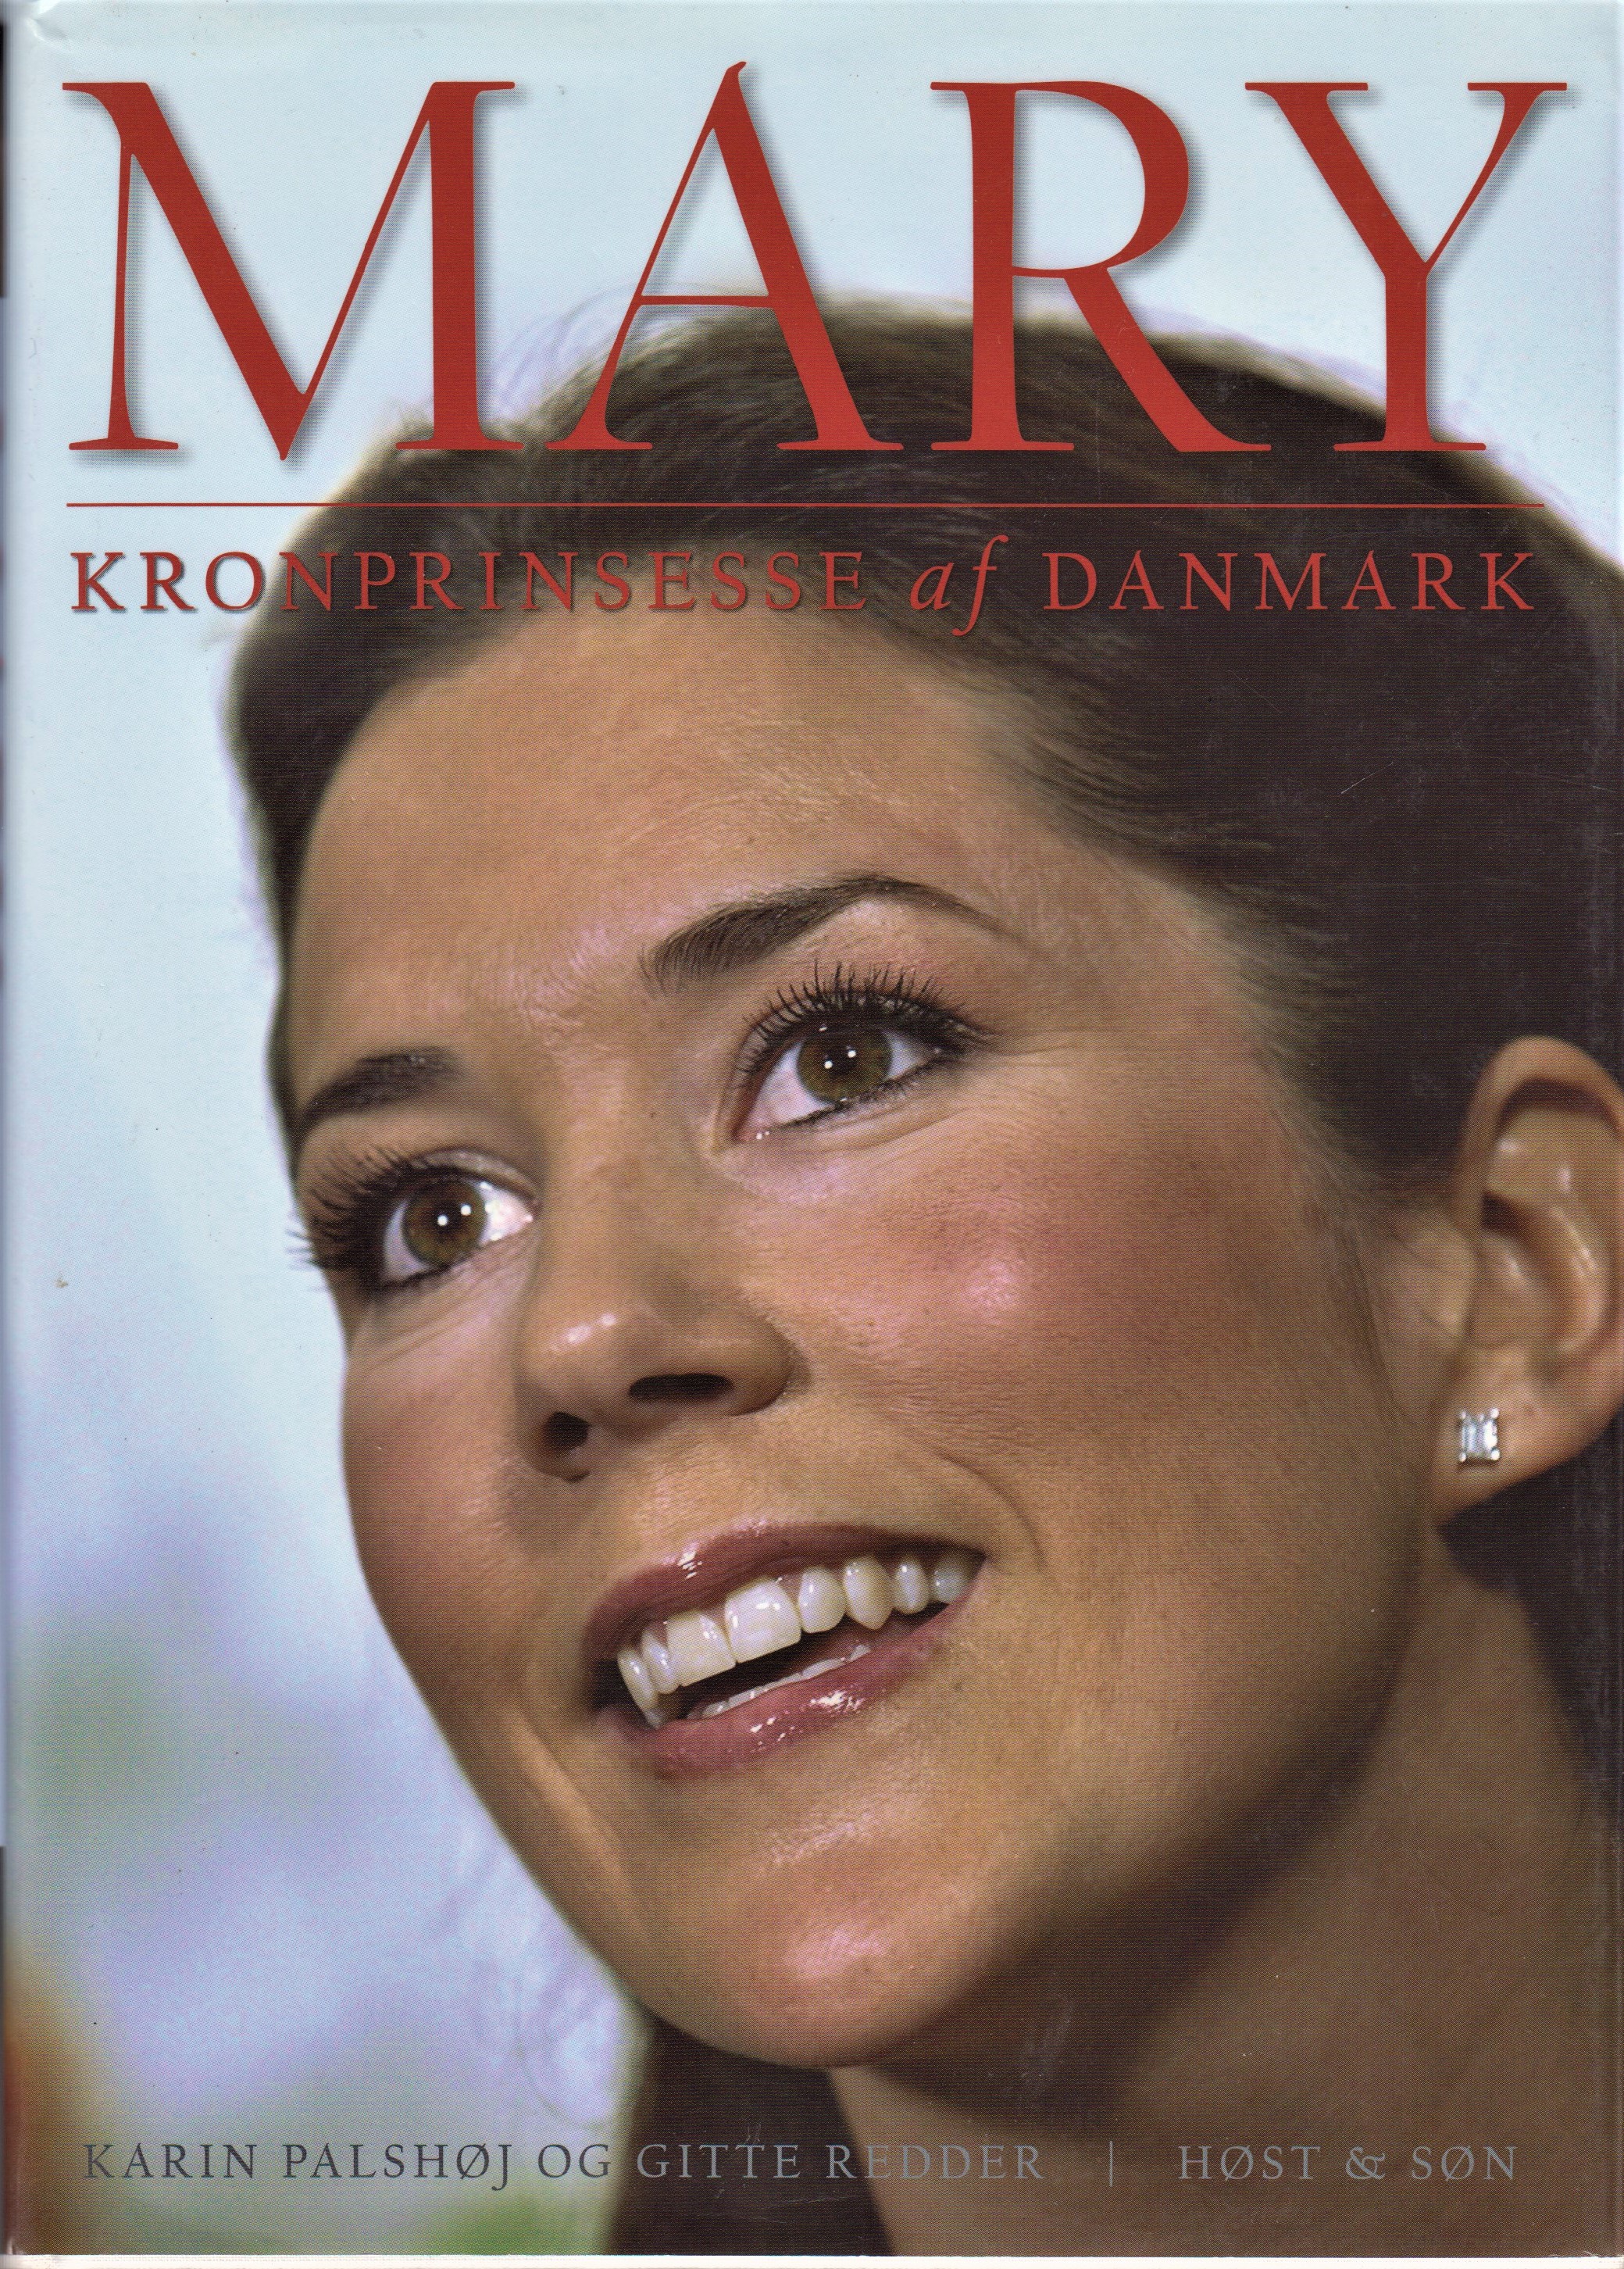 Få Kronprinsesse af Danmark af Mary. Kronprinsesse - Palshøj, Karin - Redder, Gitte | Bøger & Kuriosa